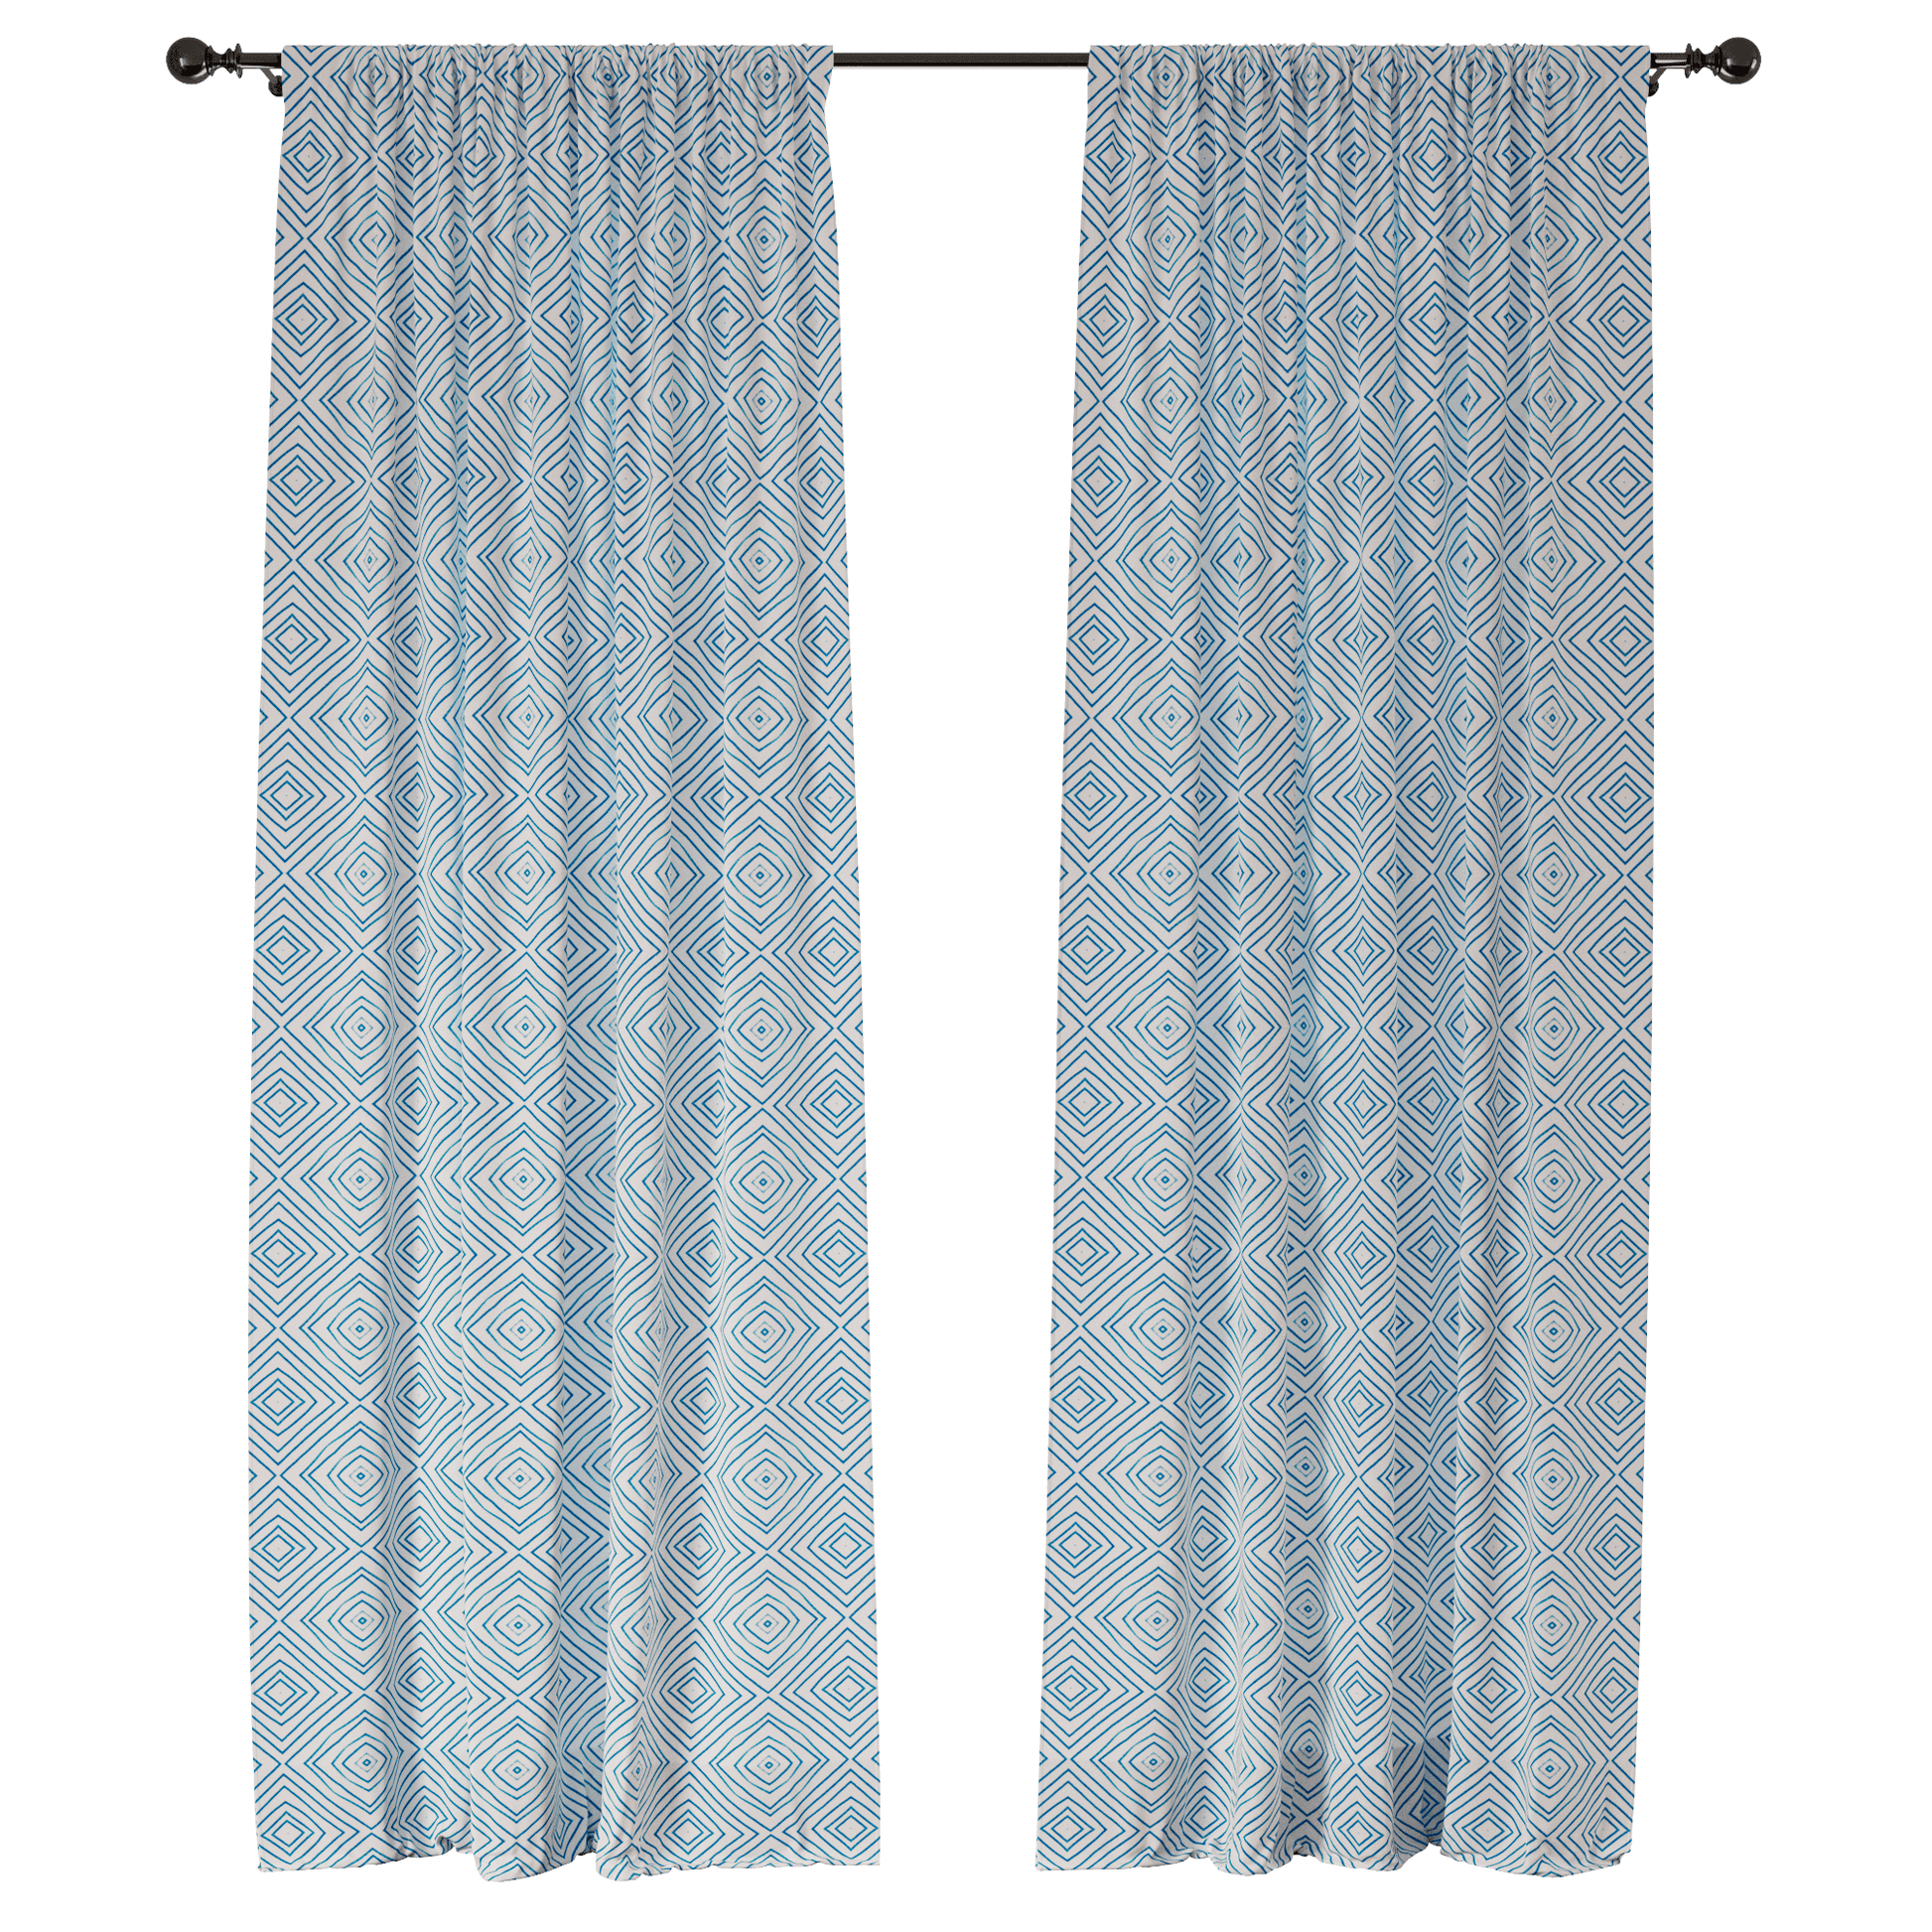 Aquamarine Allure Window Curtains - ArtessaFusion